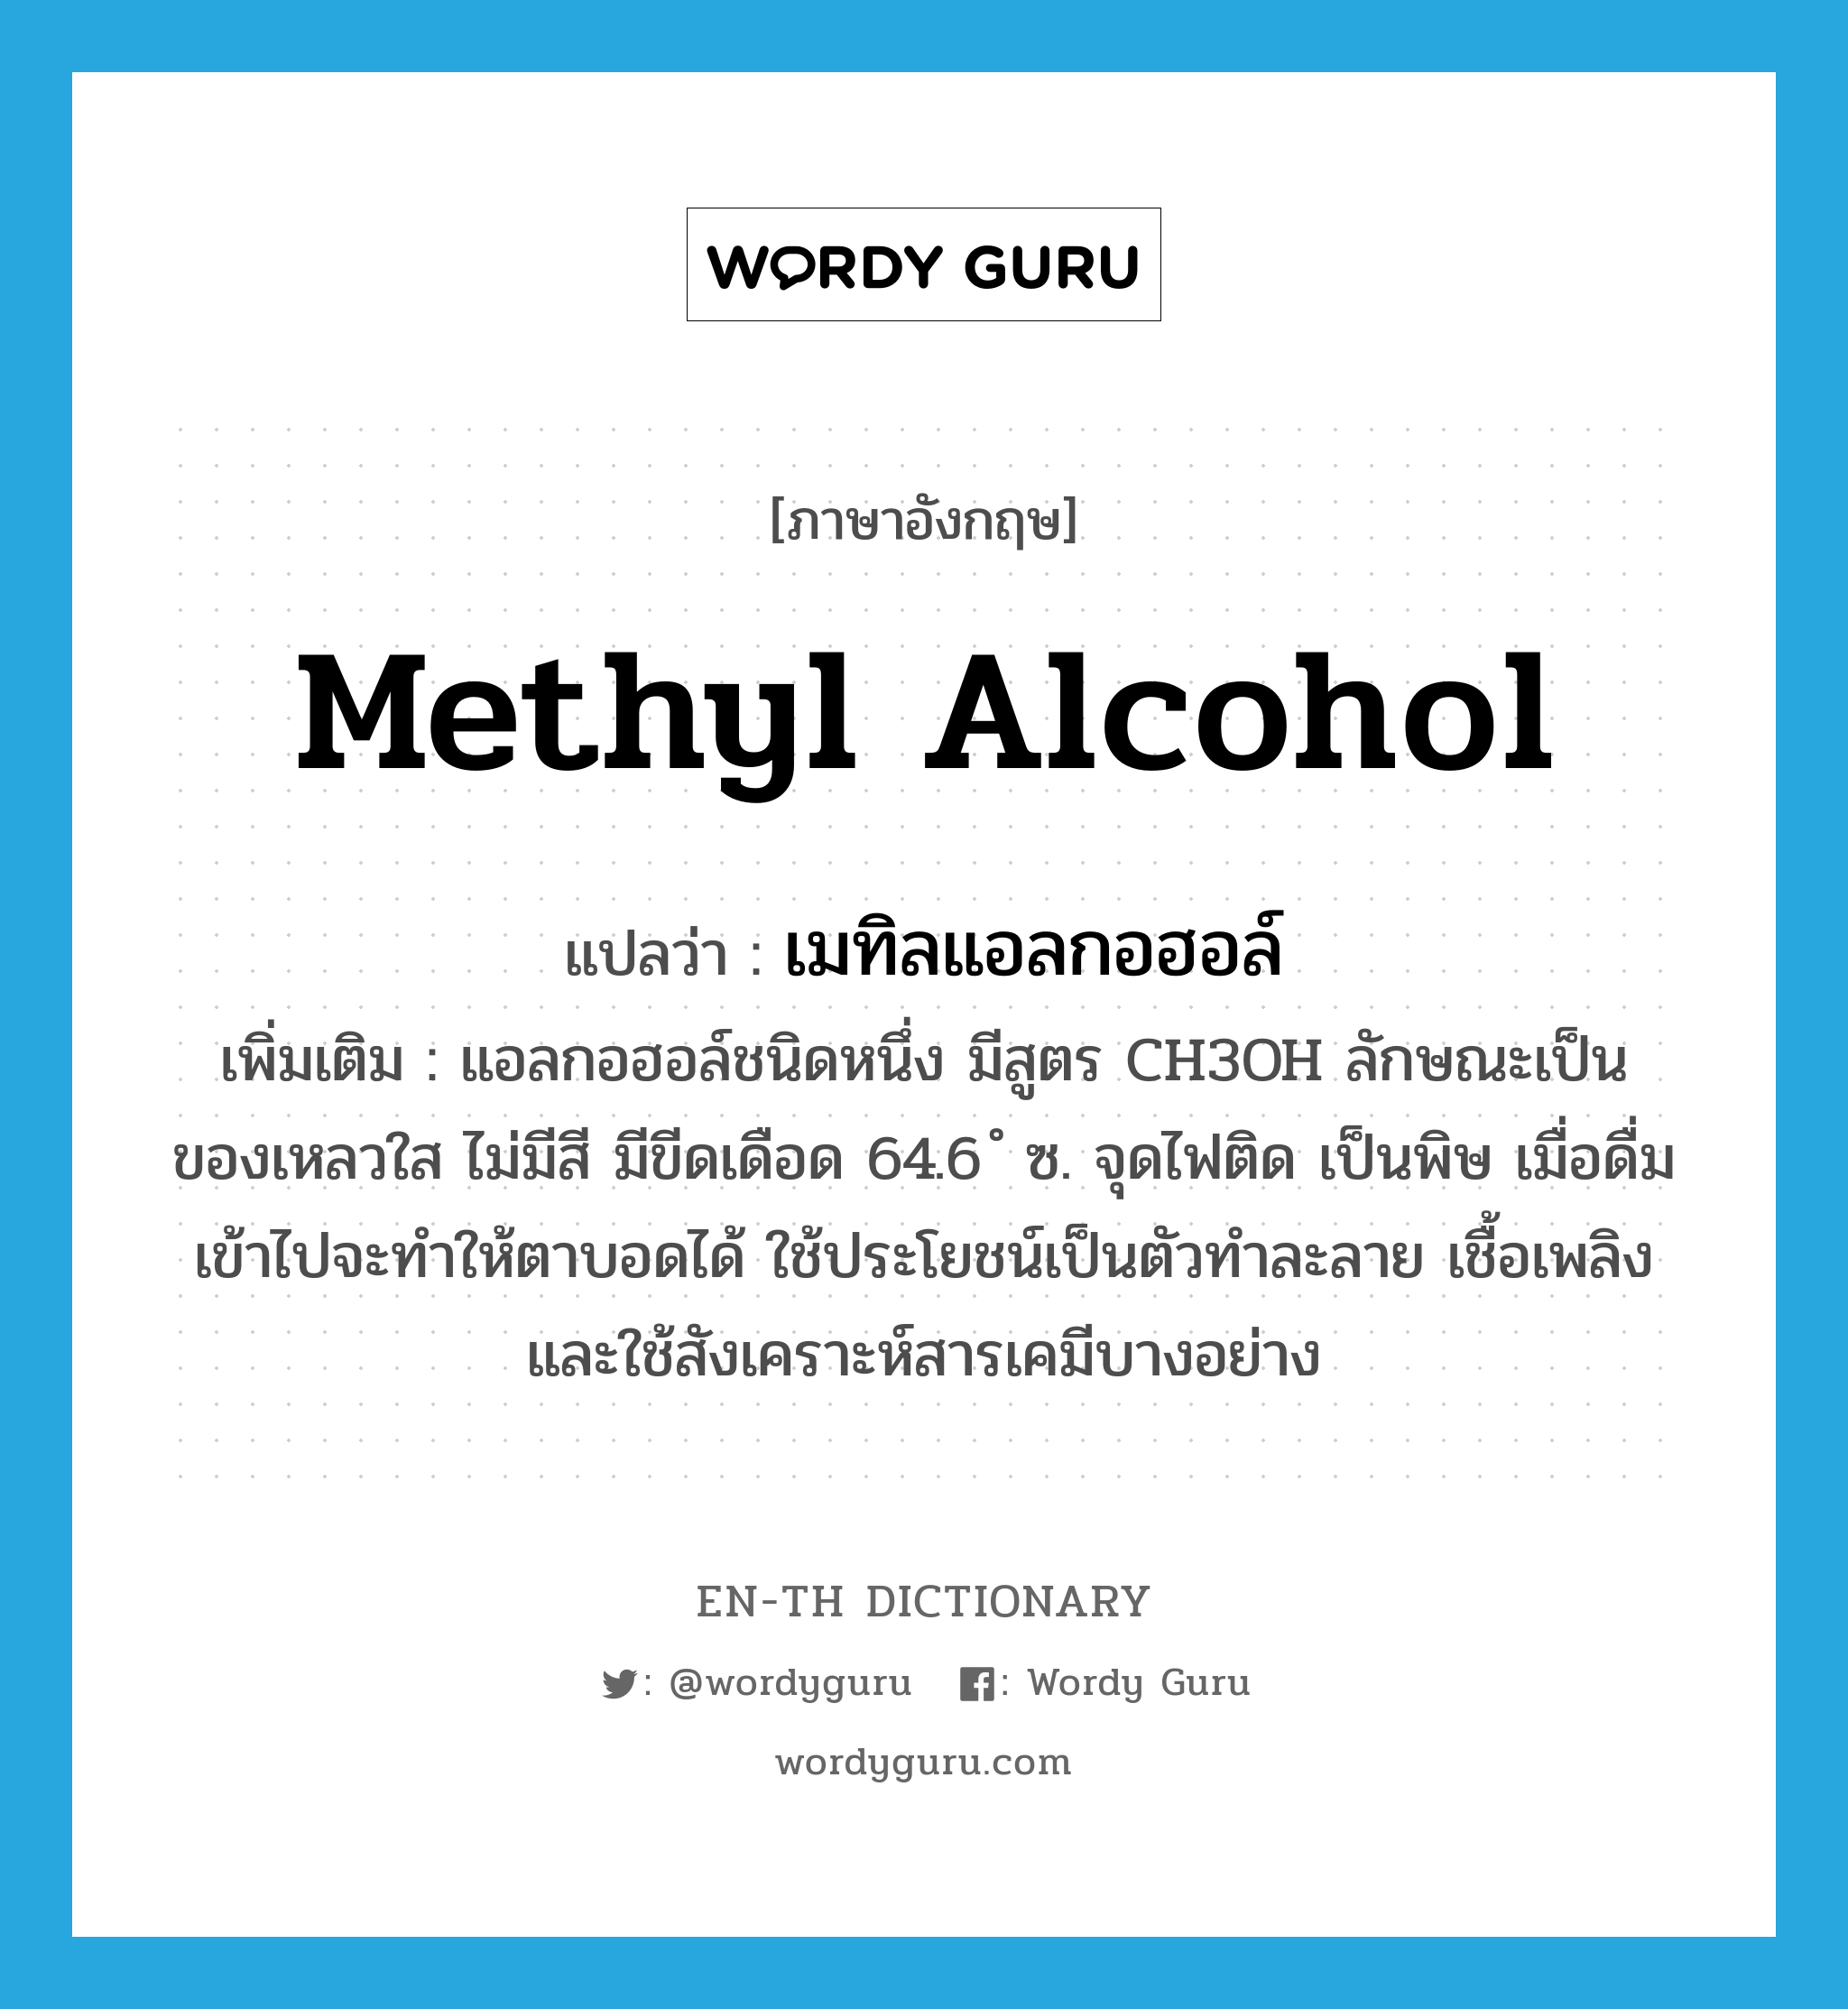 methyl alcohol แปลว่า?, คำศัพท์ภาษาอังกฤษ methyl alcohol แปลว่า เมทิลแอลกอฮอล์ ประเภท N เพิ่มเติม แอลกอฮอล์ชนิดหนึ่ง มีสูตร CH3OH ลักษณะเป็นของเหลวใส ไม่มีสี มีขีดเดือด 64.6 ํ ซ. จุดไฟติด เป็นพิษ เมื่อดื่มเข้าไปจะทำให้ตาบอดได้ ใช้ประโยชน์เป็นตัวทำละลาย เชื้อเพลิง และใช้สังเคราะห์สารเคมีบางอย่าง หมวด N